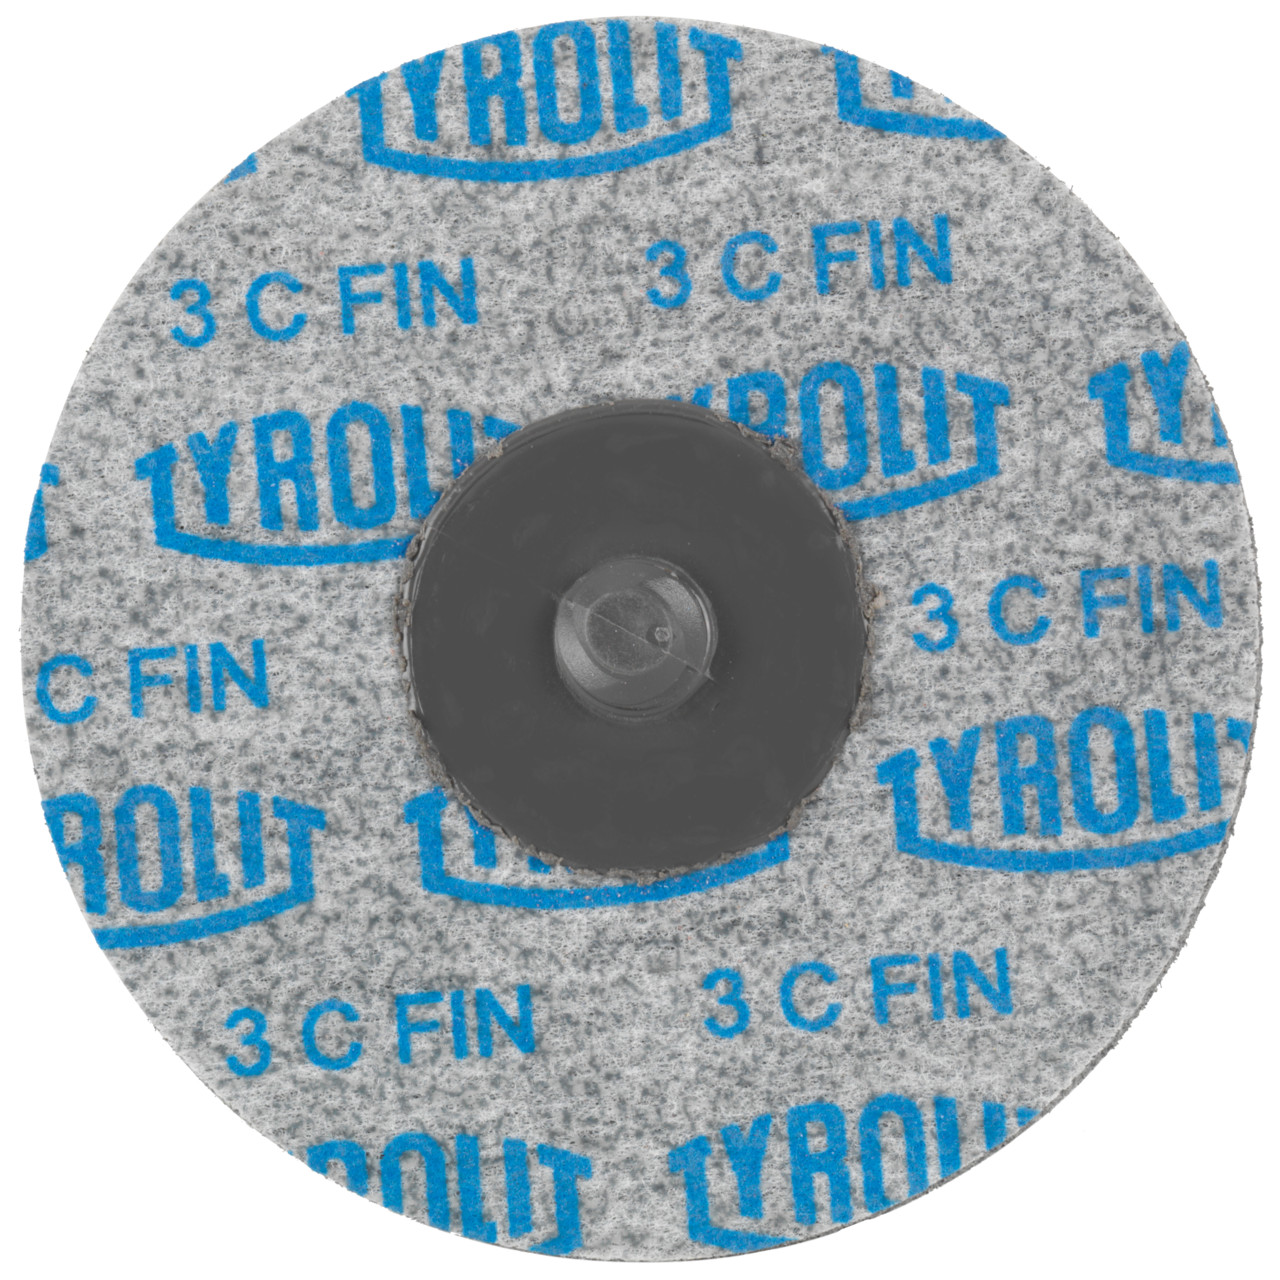 Tyrolit Discos compactos prensados DISCO DE CAMBIO RÁPIDO Dimensión 51xR De uso universal, 3 C FEIN, forma: QDISC, Art. 34190108